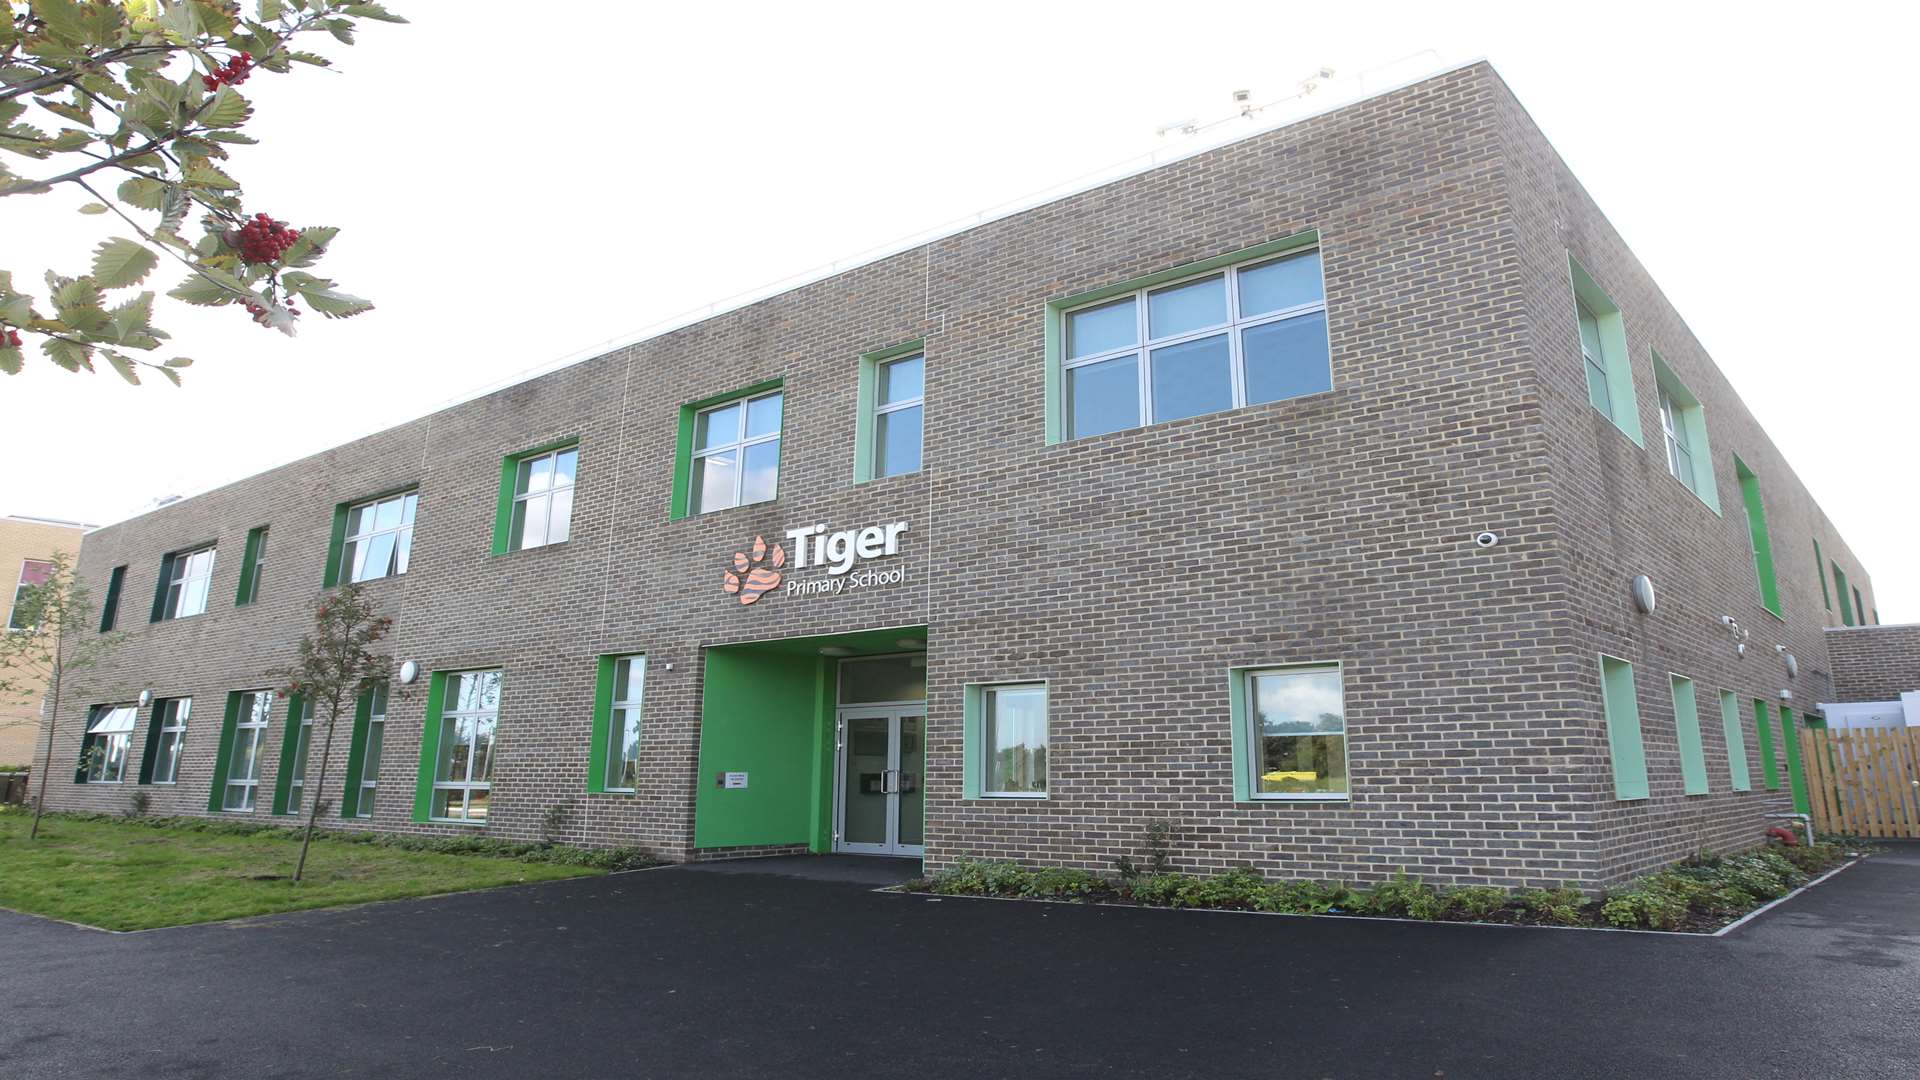 Tiger Primary School